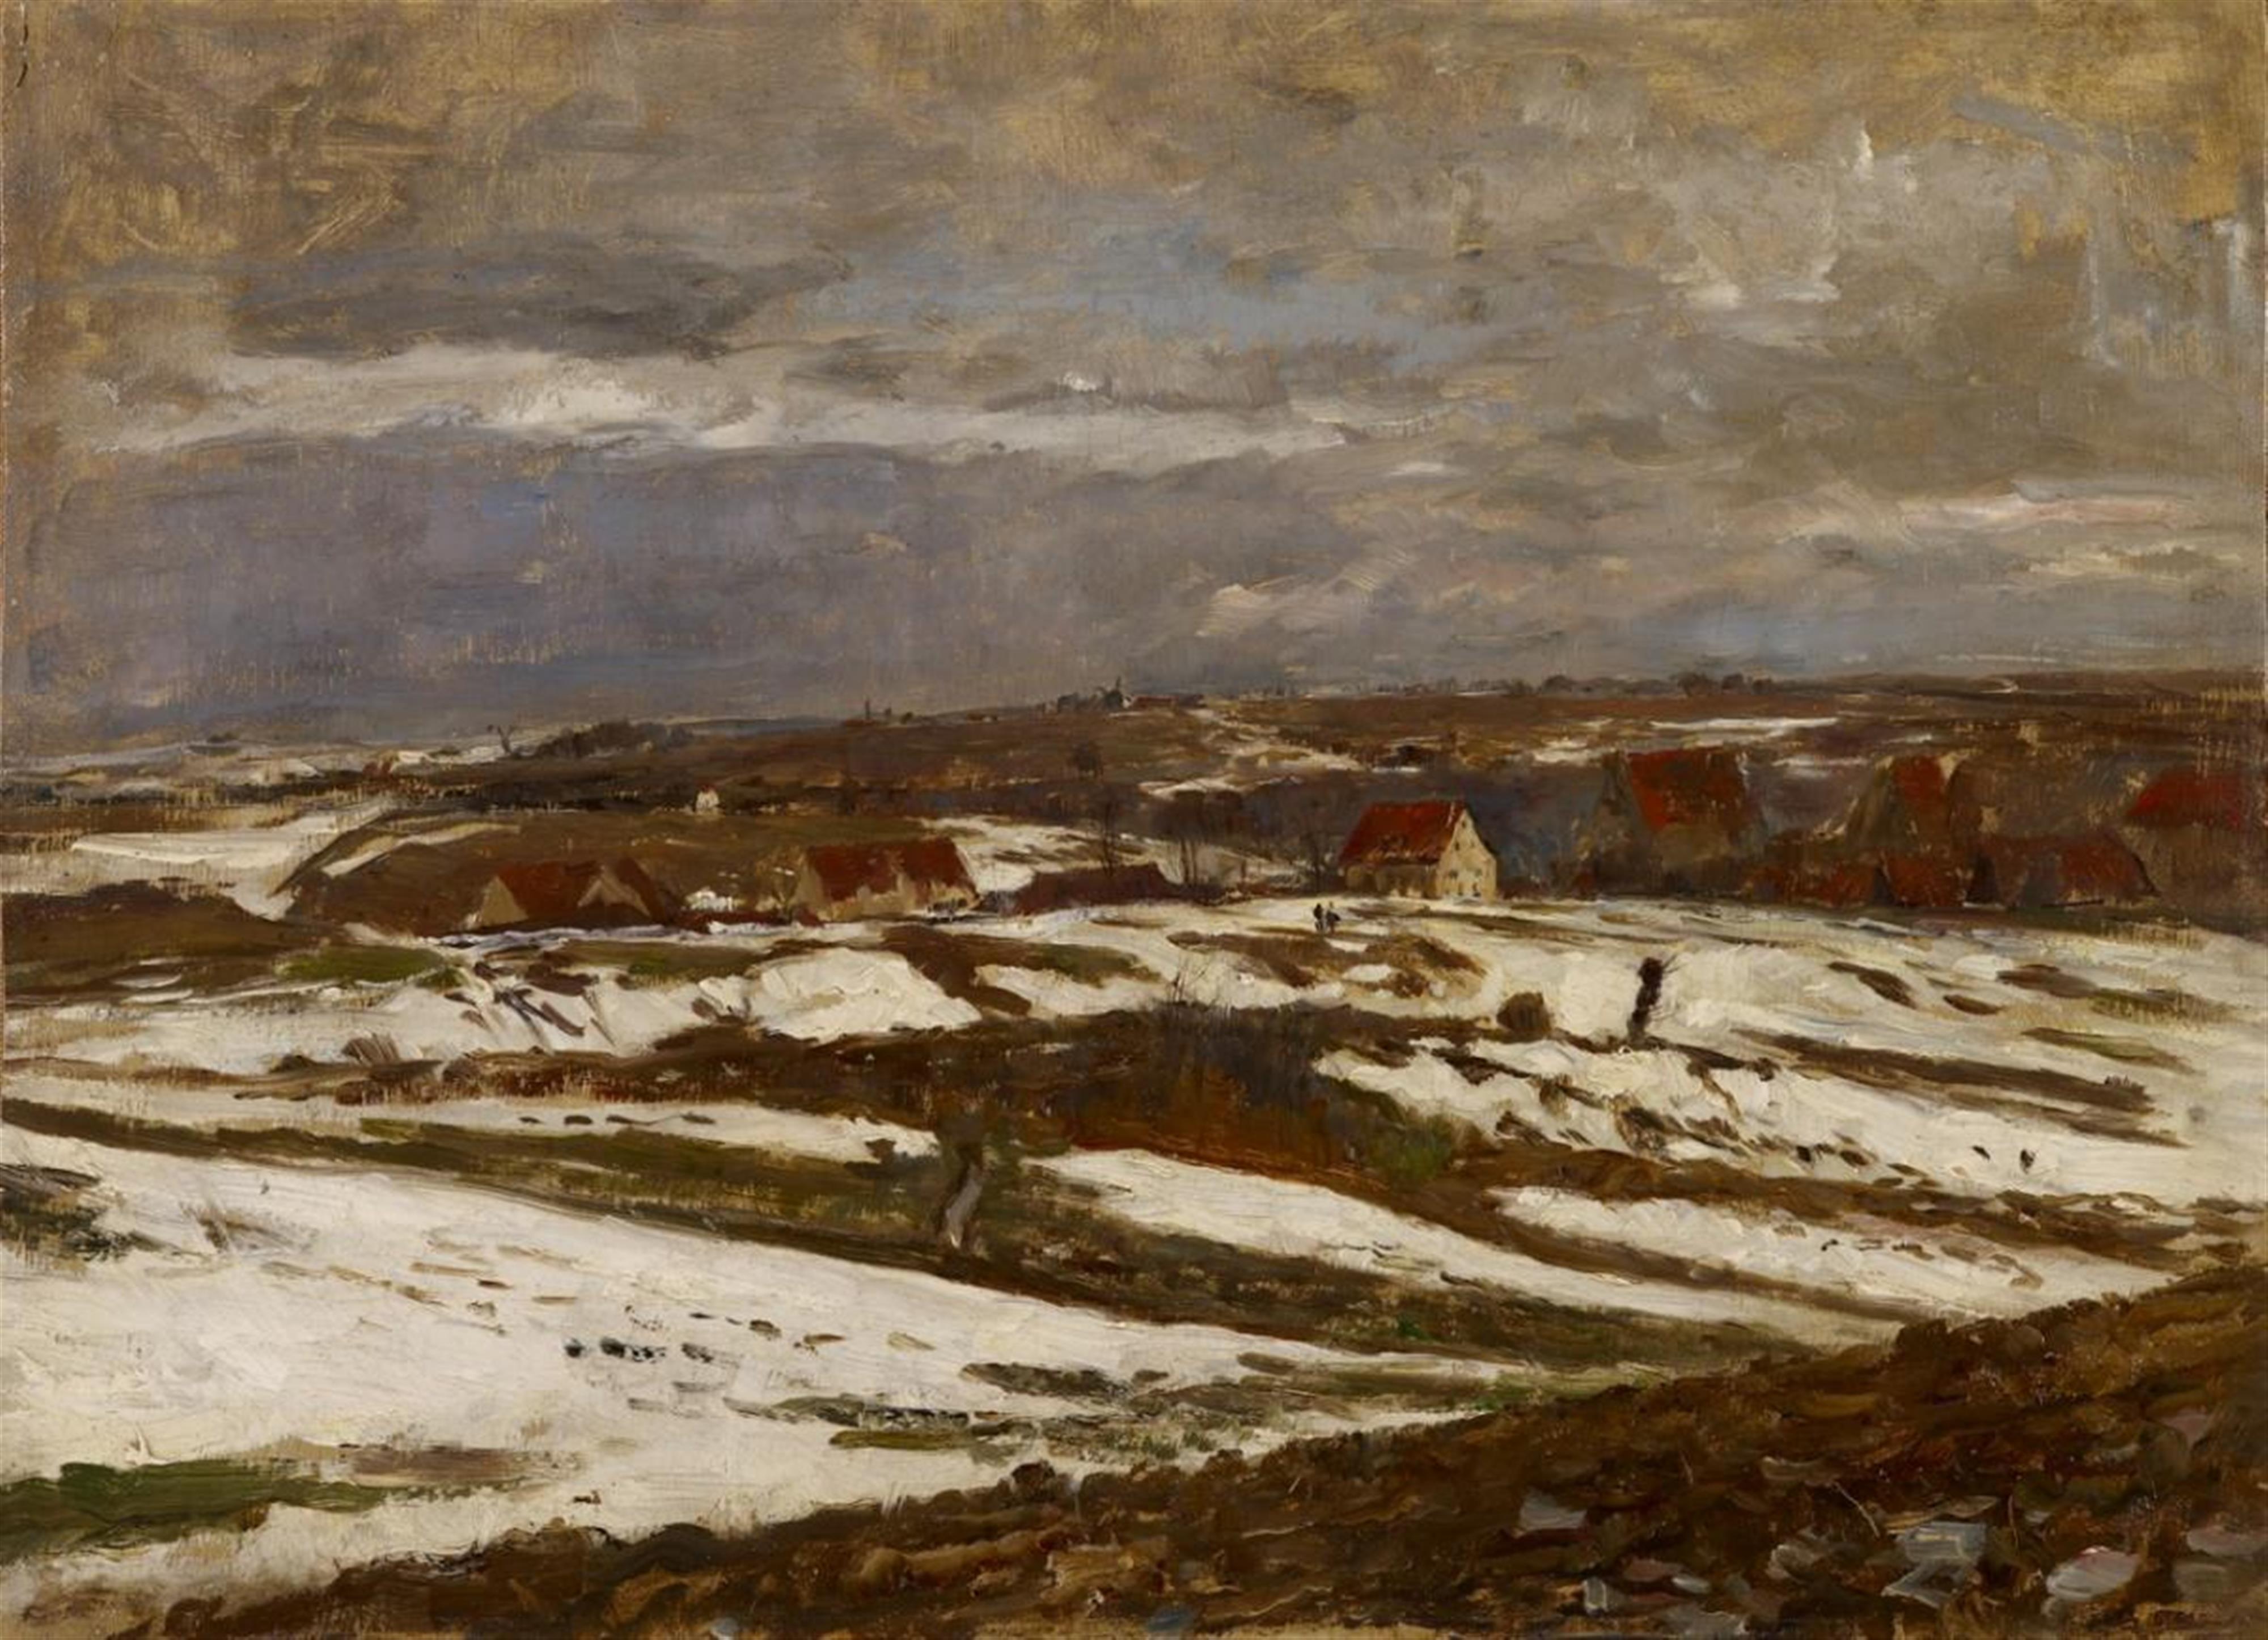 Paul Baum - Landschaft in letztem Schnee bei Weimar, mit einem Dorf in einer Talsenke (Landscape with last snow near Weimar, with a village in a valley) - image-1